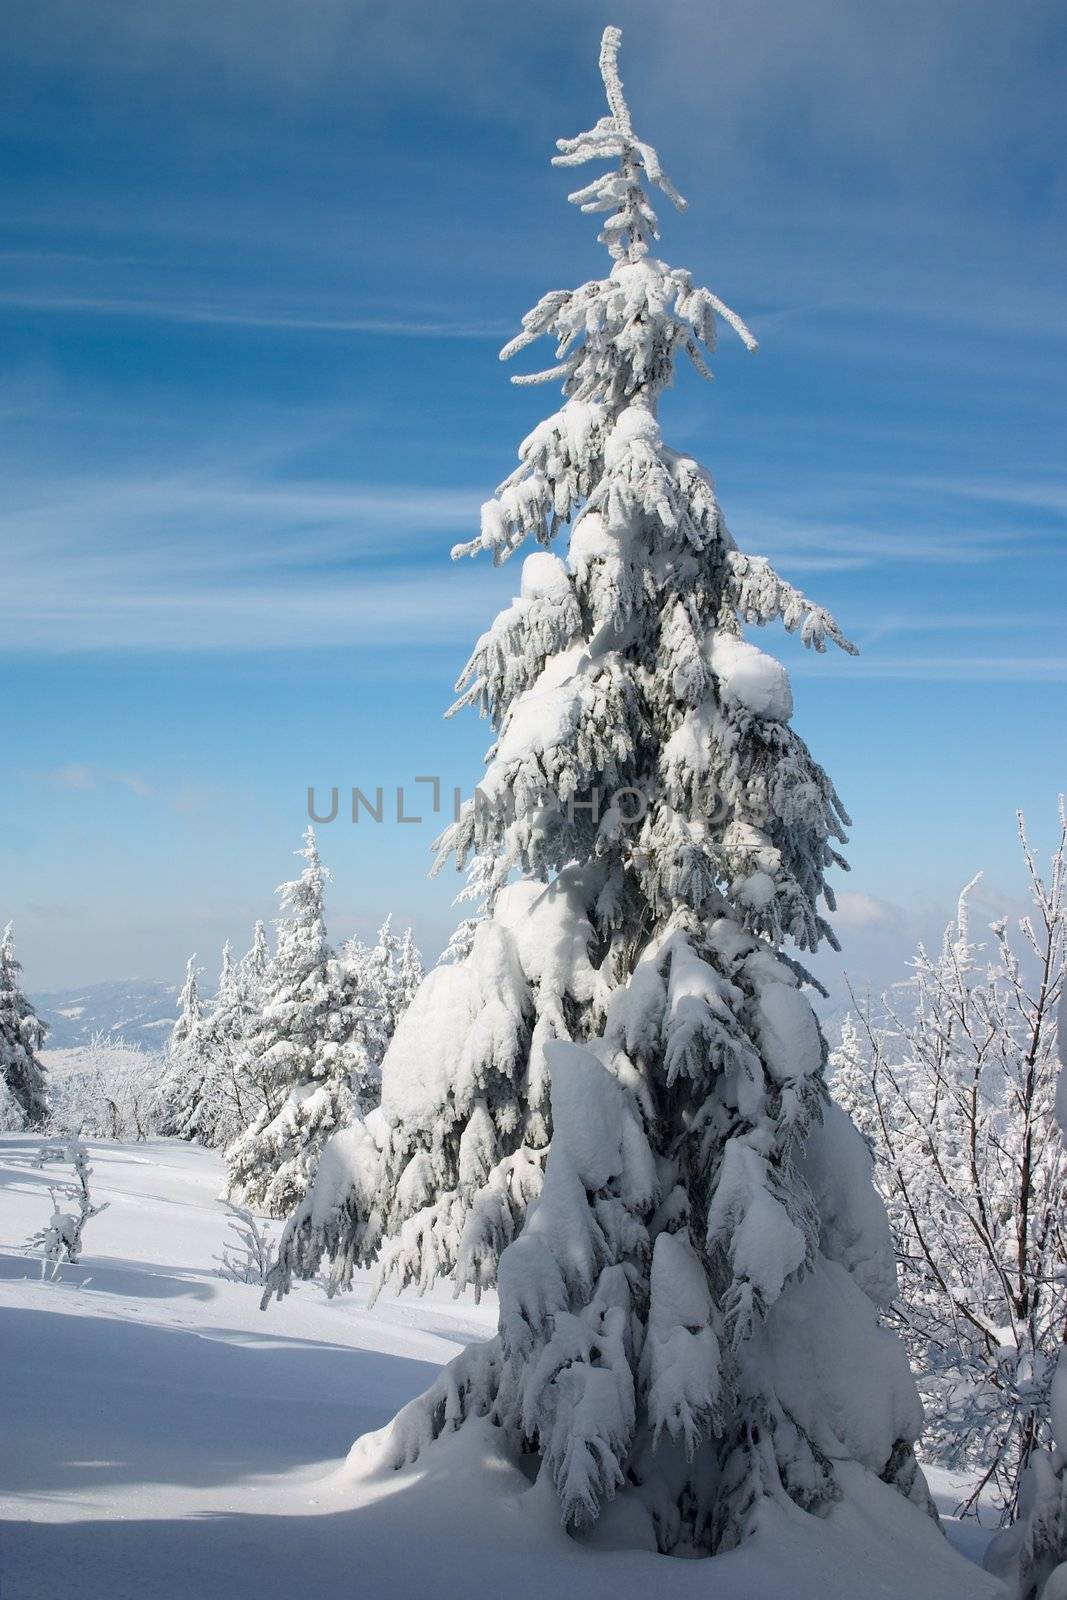 snowy fir tree in winter mountains landscape